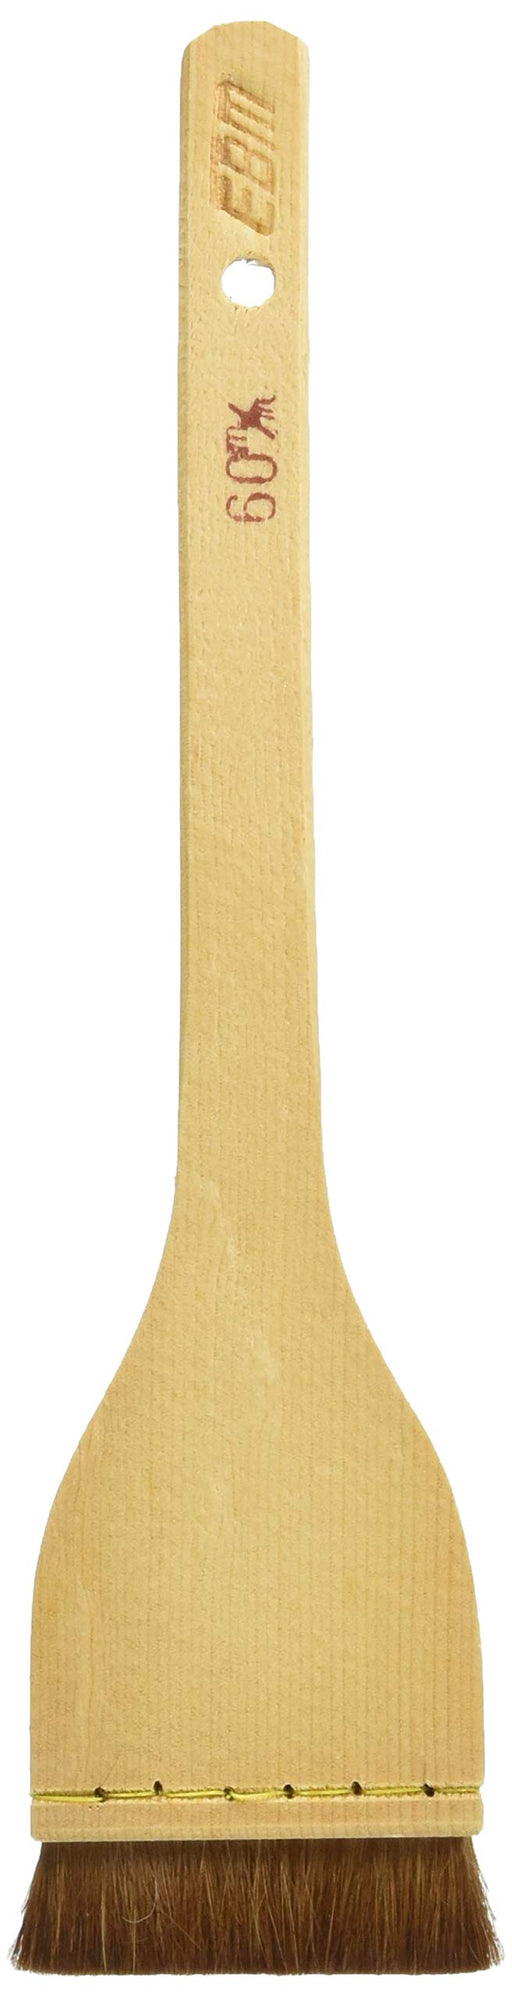 EBM Wooden Handle Edo-style sushi brush 60mm Brush Length 15mm for Professional_1